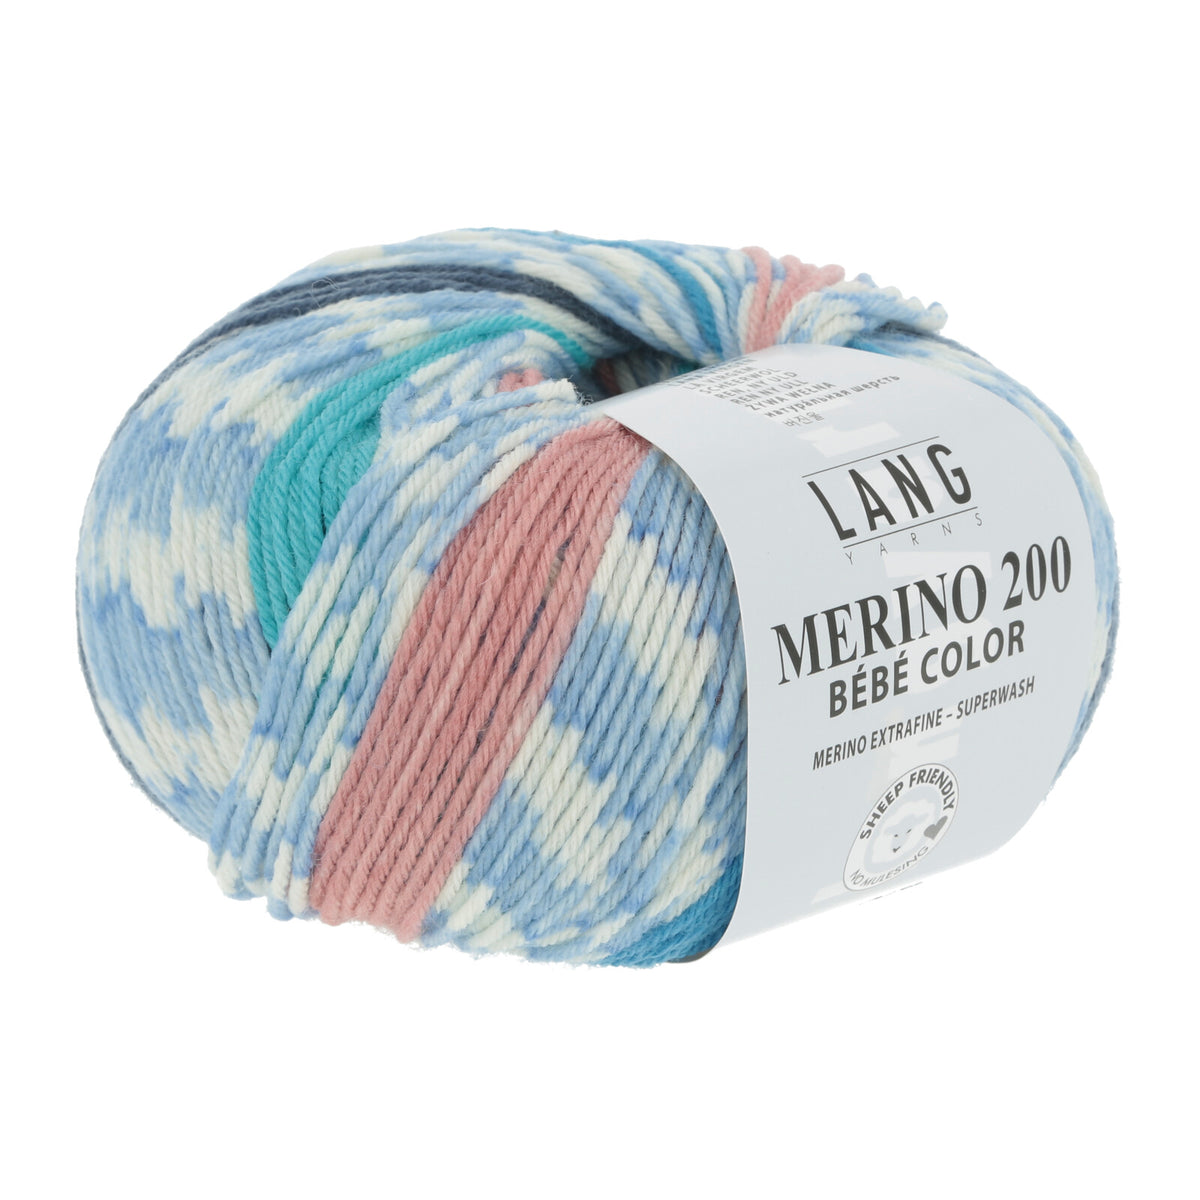 Lana Merino 200 – Bebé Color